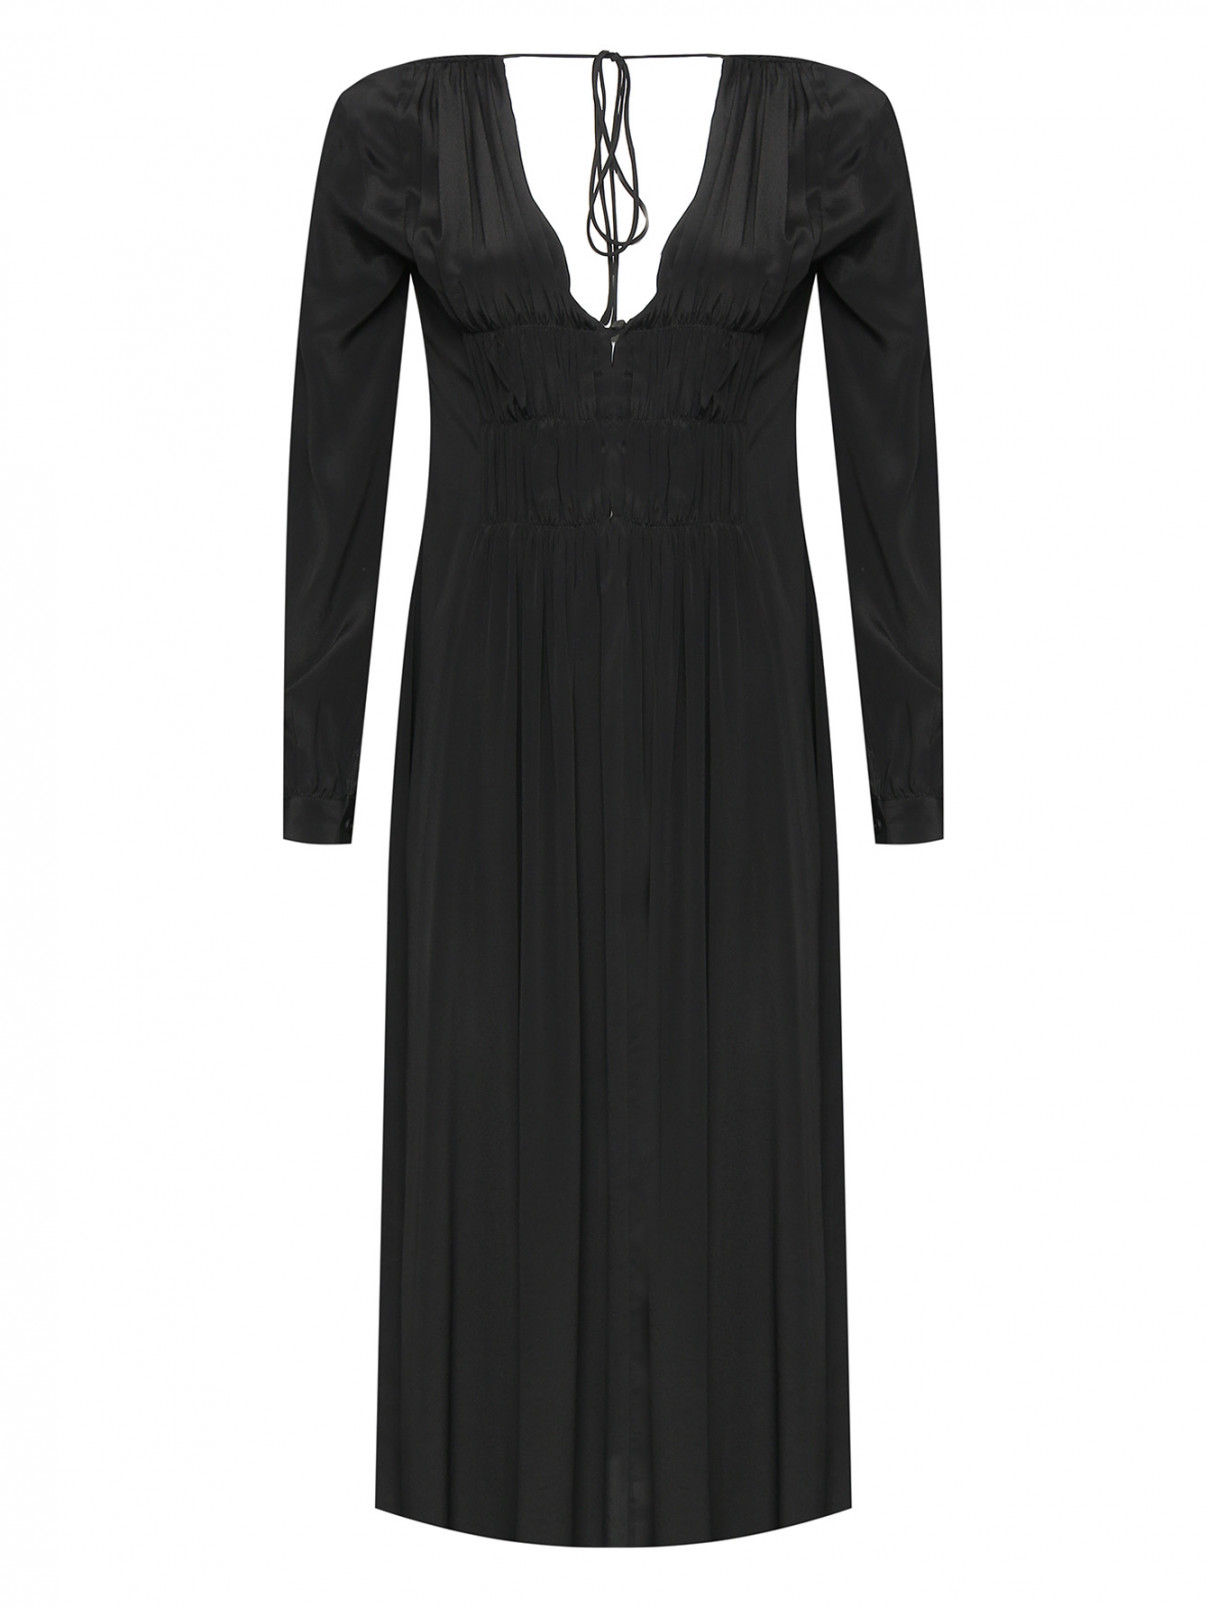 Однотонное платье с вырезом и завязками Liviana Conti  –  Общий вид  – Цвет:  Черный